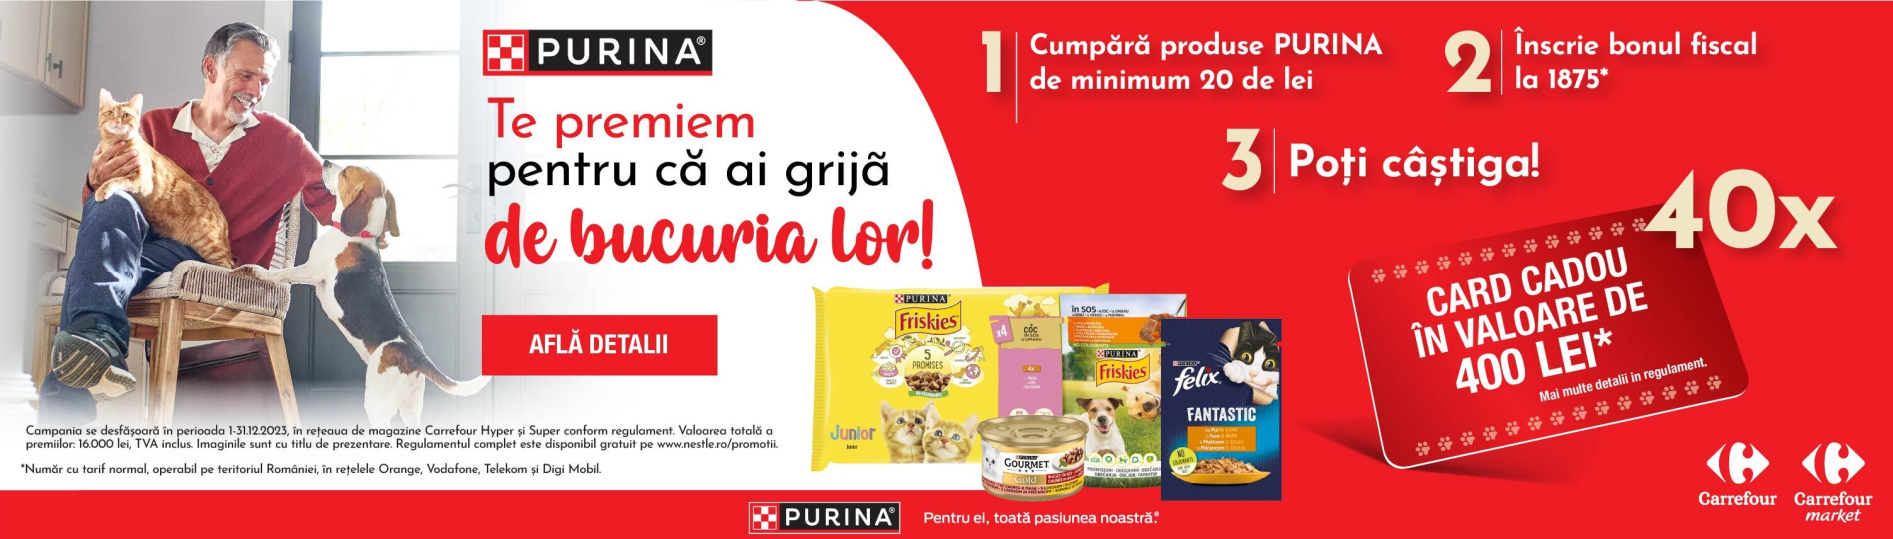 Concurs Purina - Castiga 40x Card Cadou Carrefour in valoare de 400 lei